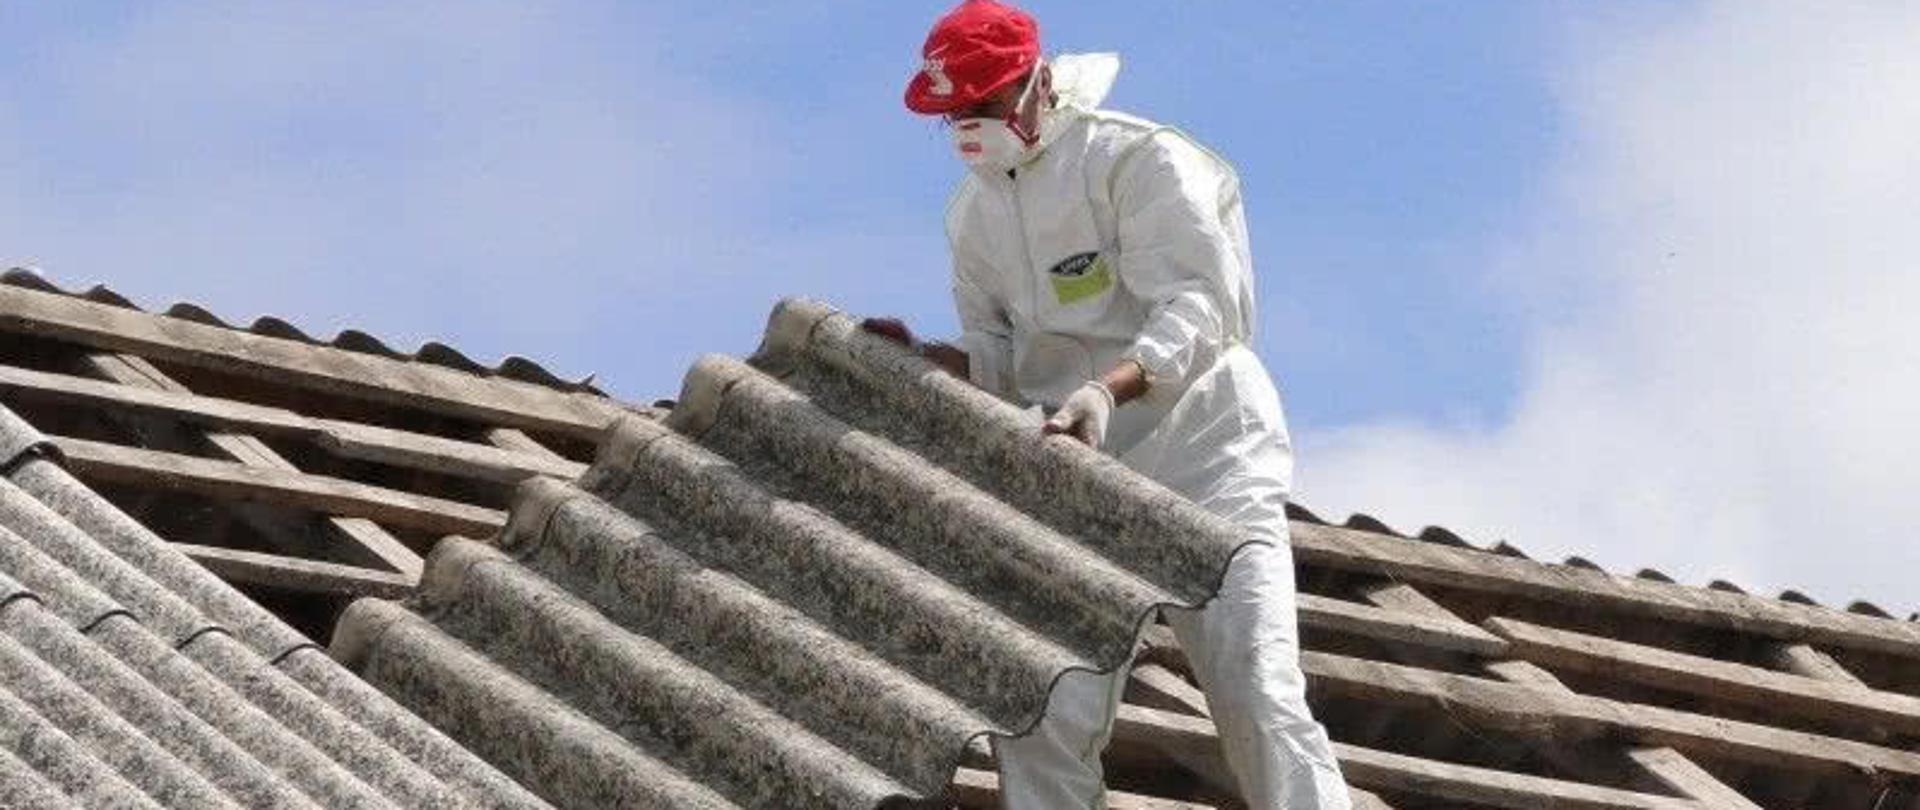 człowiek usuwający azbest z dachu domu